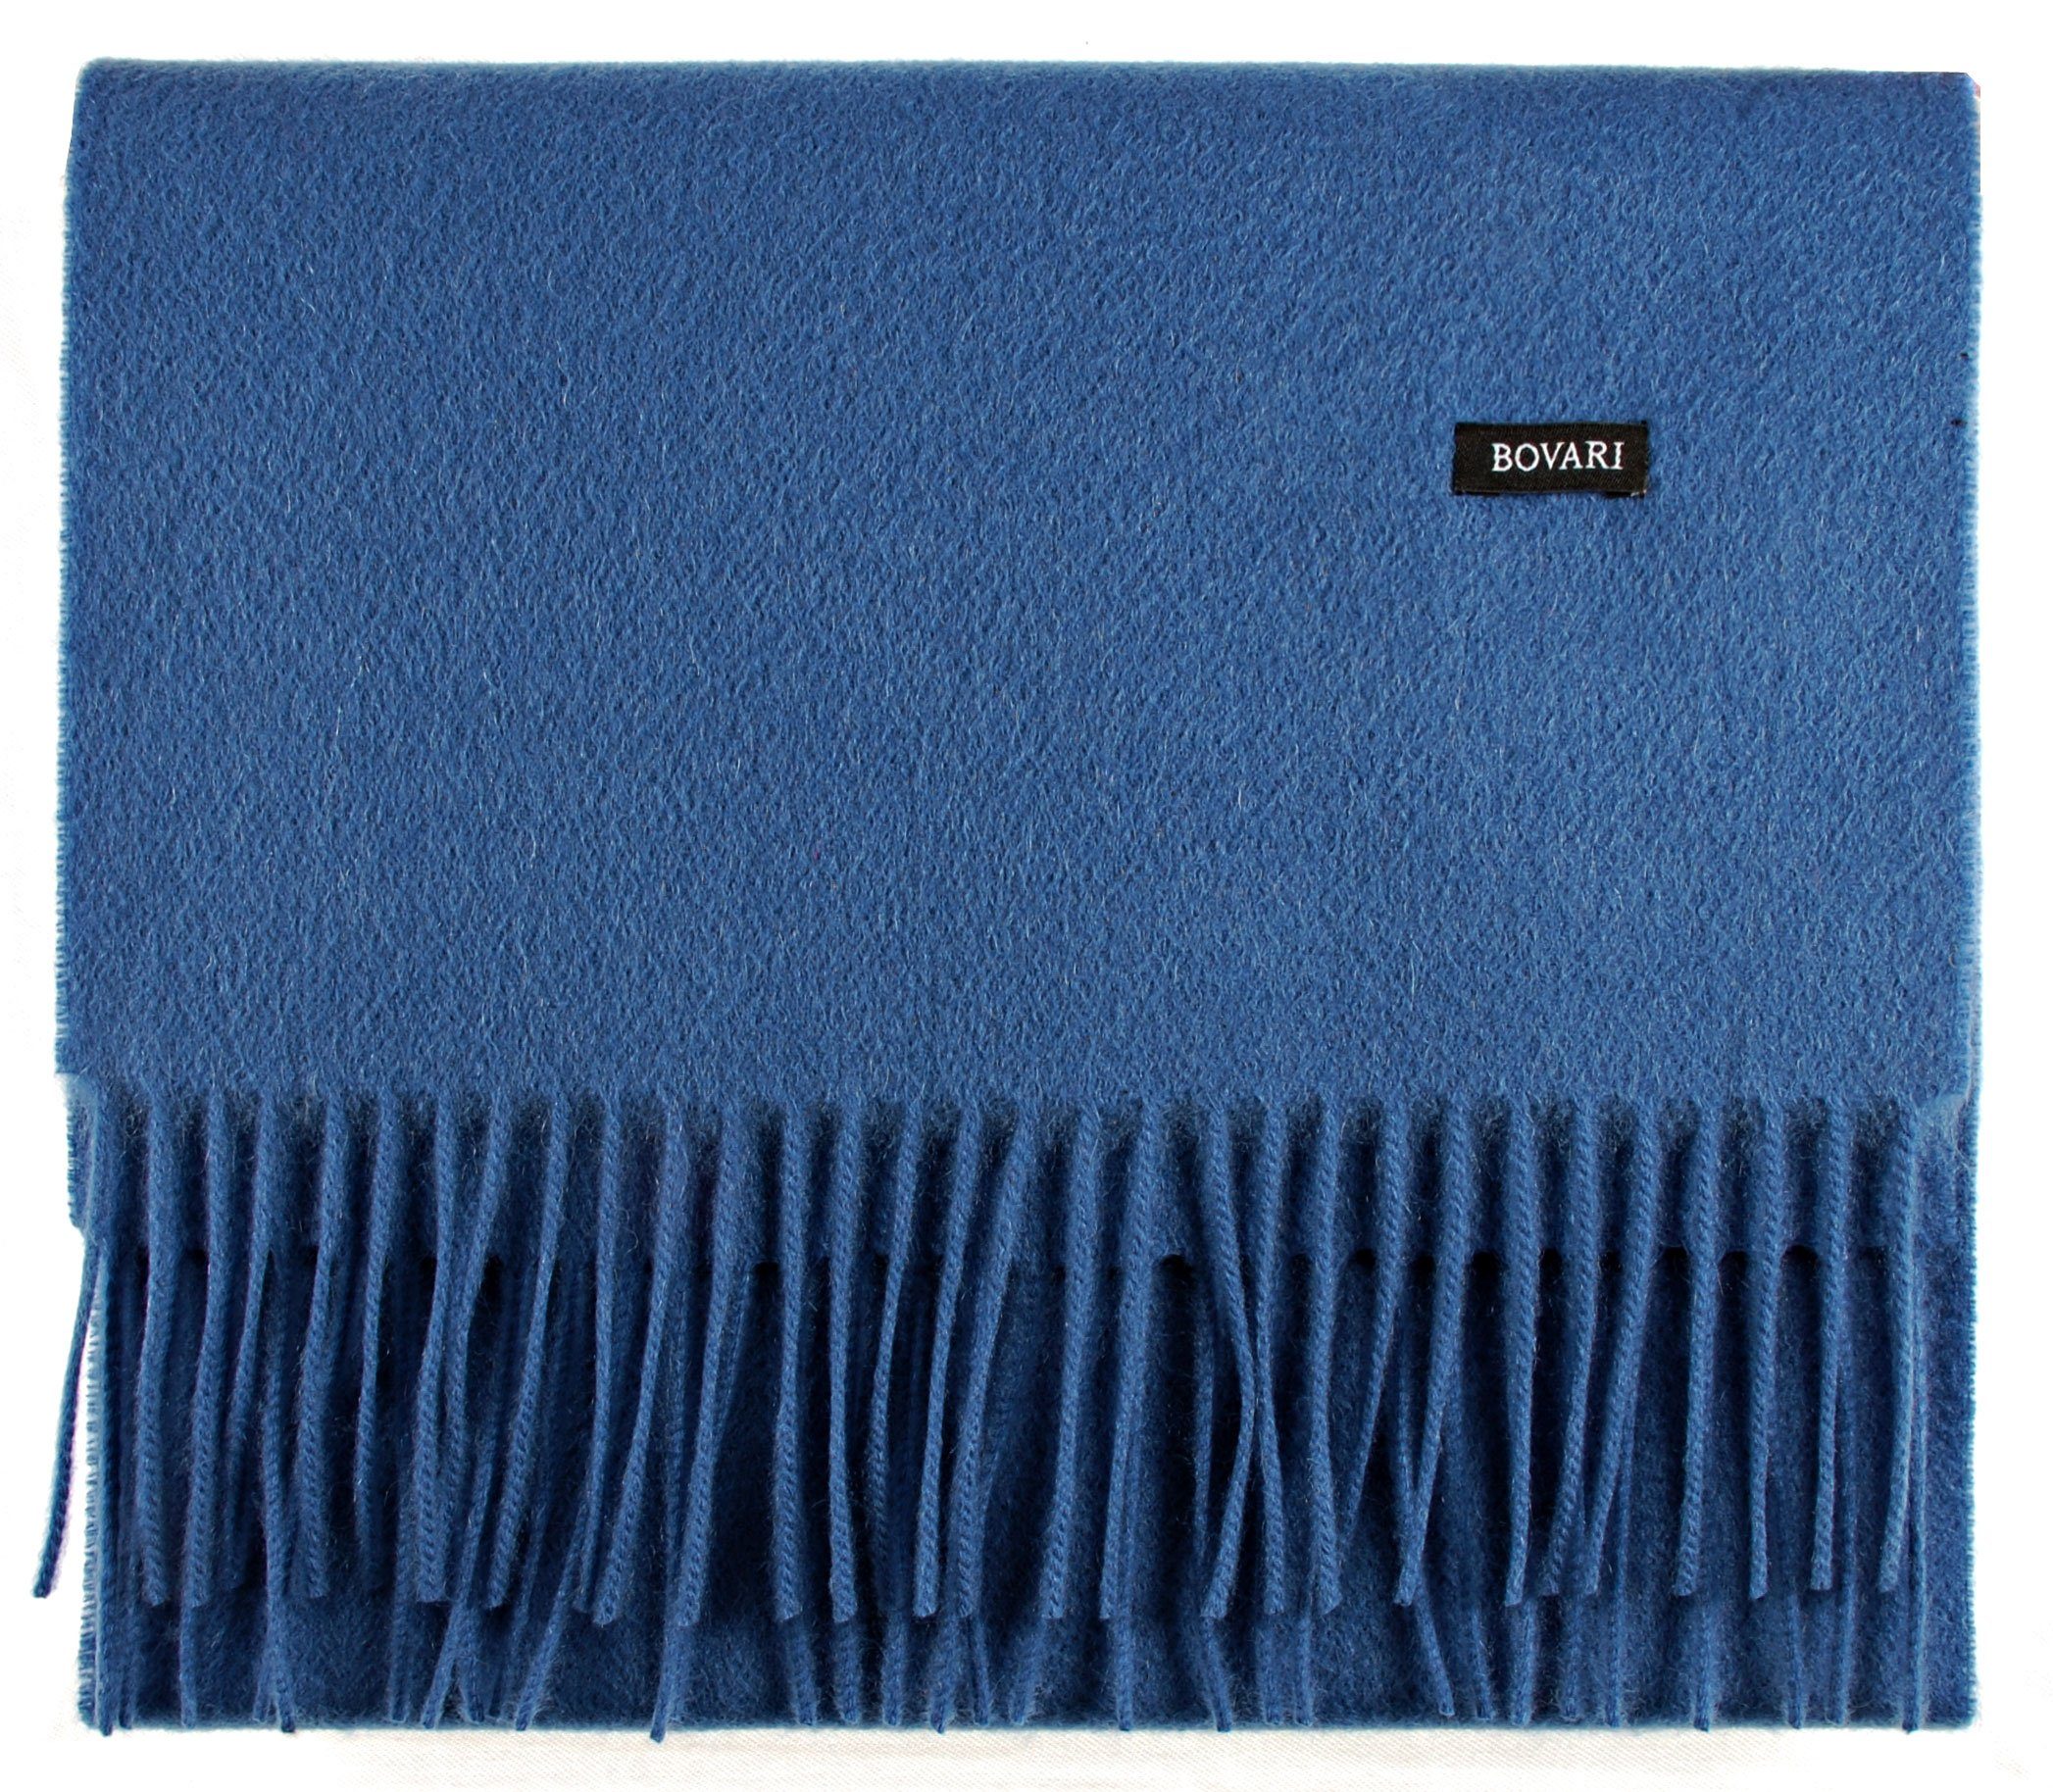 Bovari Kaschmirschal Kaschmir Schal Damen – 100% Kaschmir/Cashmere – Premium Qualität, 180 x 31 cm blau / classic blue